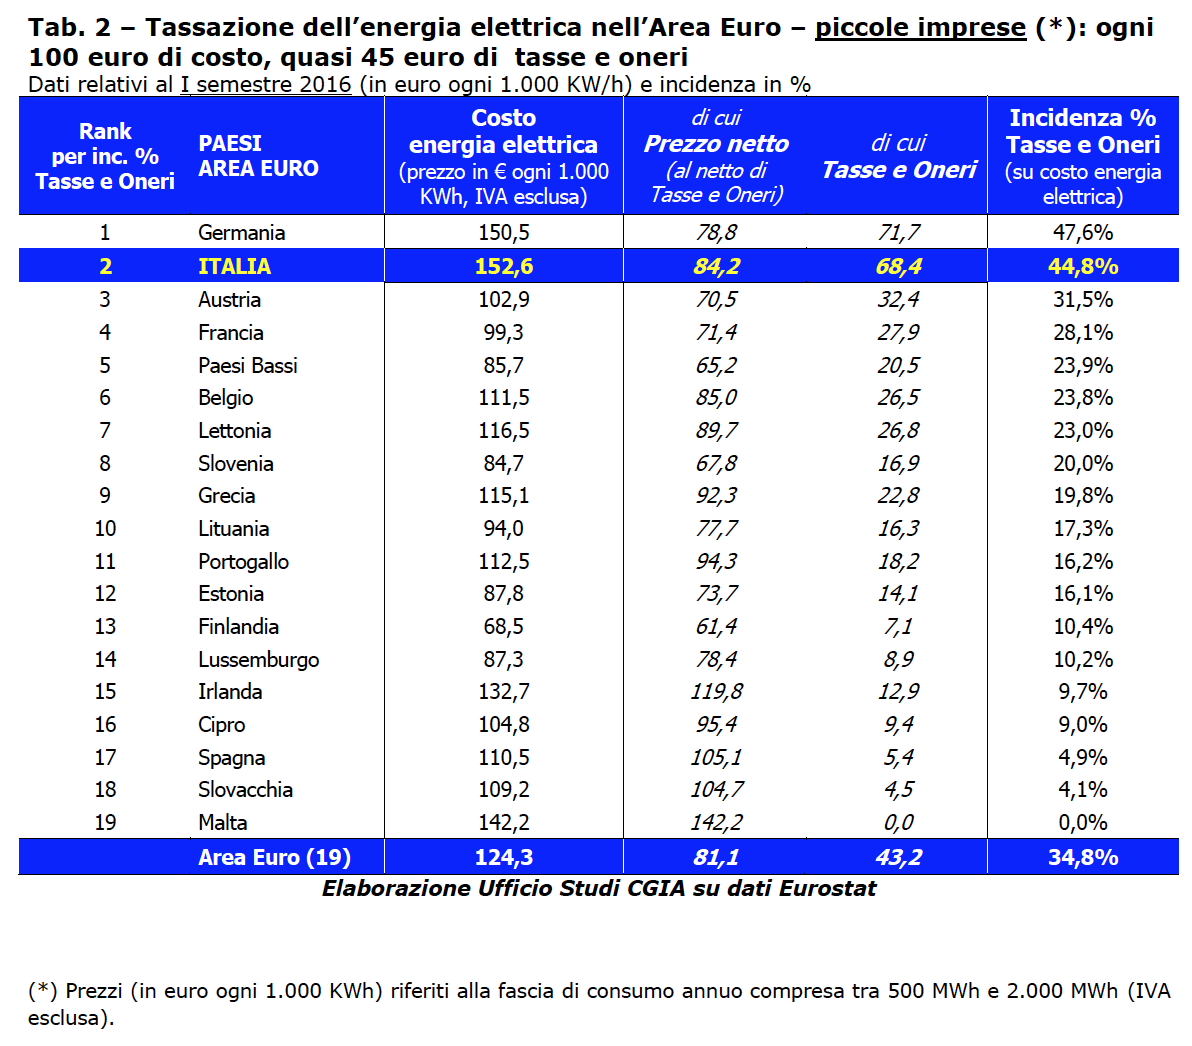 Energia elettrica “salata” per le imprese italiane: + 22,8% rispetto agli altri Paesi europei